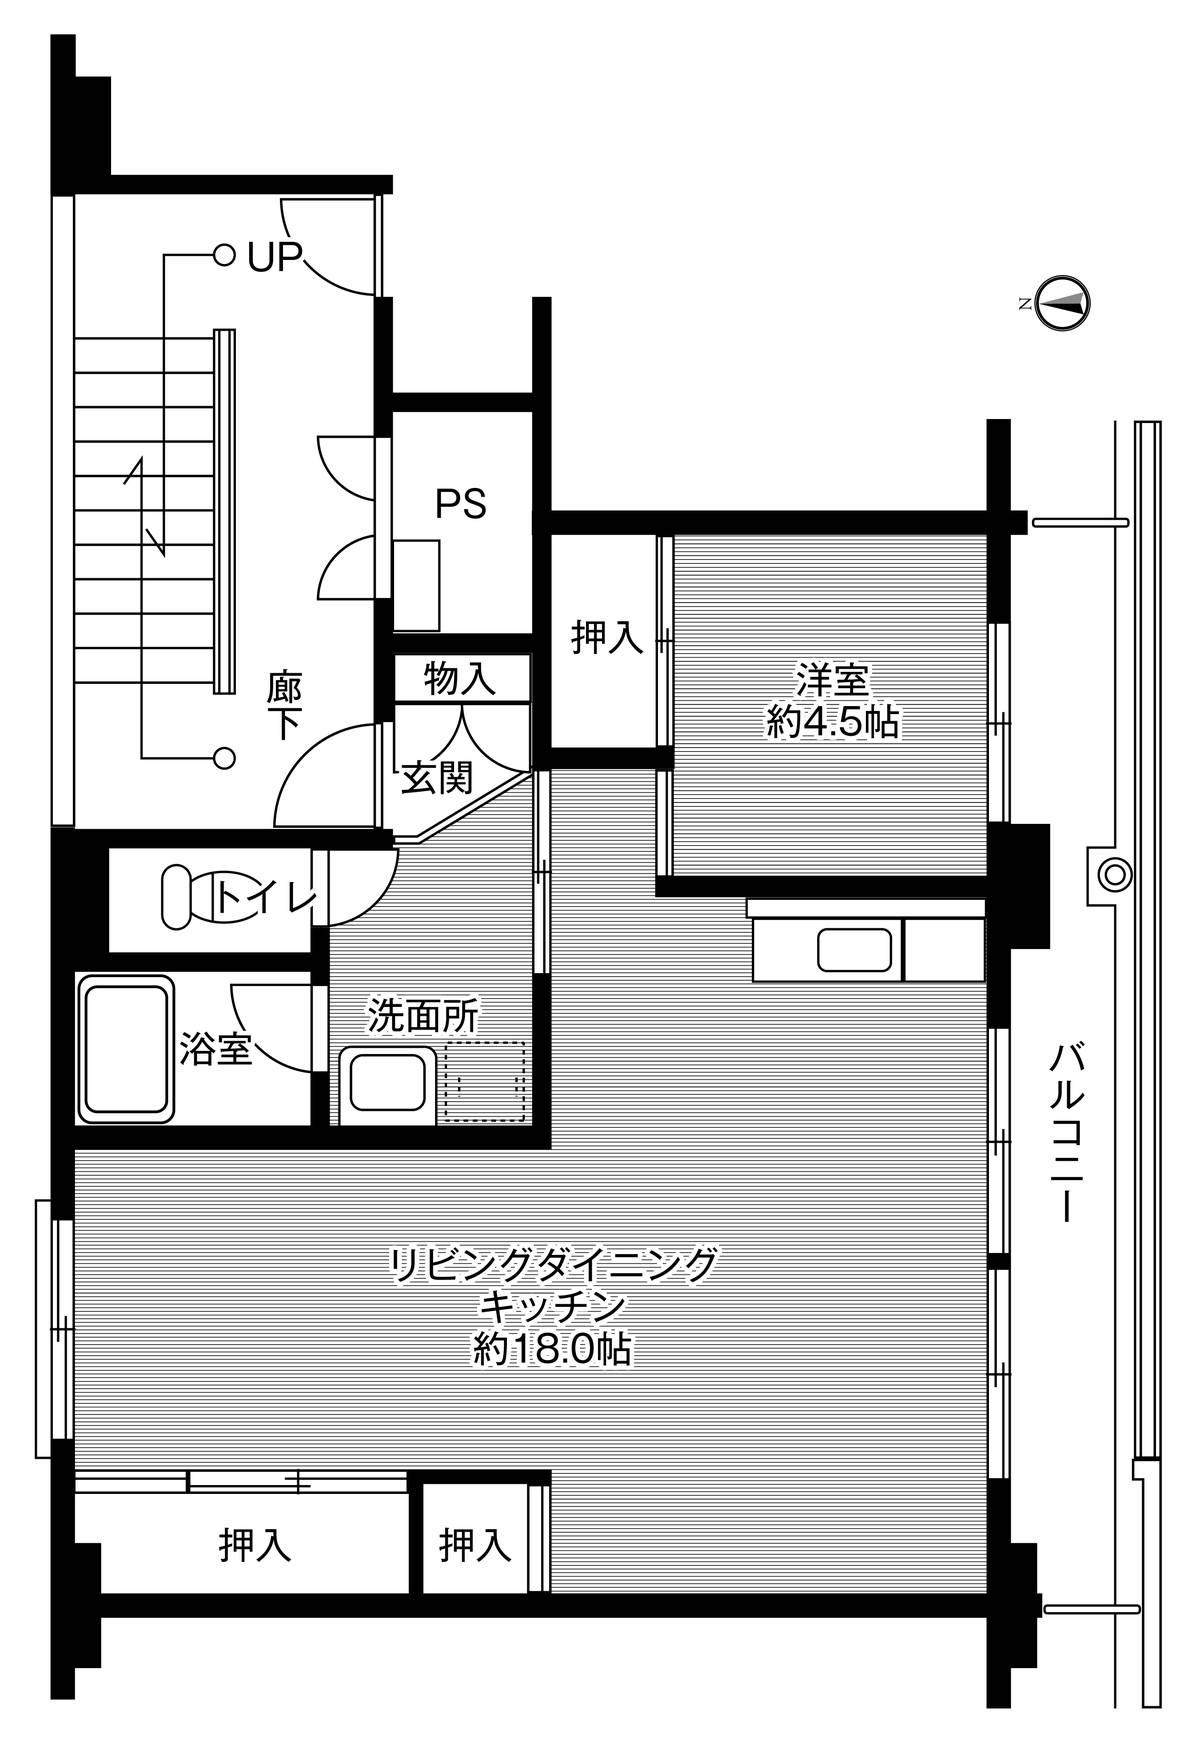 Sơ đồ phòng 1LDK của Village House Kanbayashi ở Matsumoto-shi